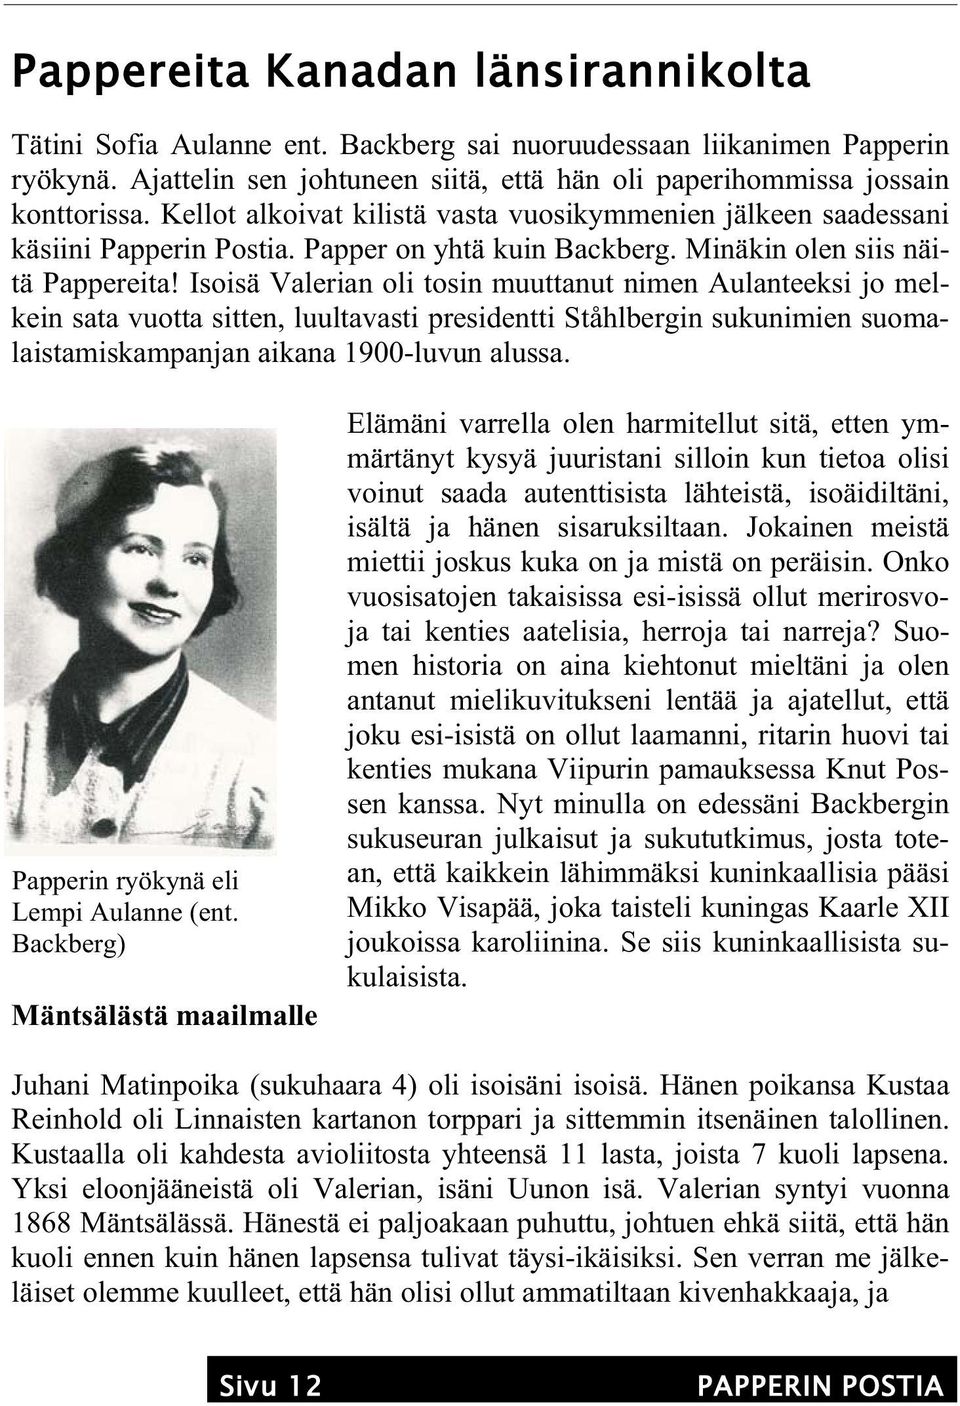 Isoisä Valerian oli tosin muuttanut nimen Aulanteeksi jo melkein sata vuotta sitten, luultavasti presidentti Ståhlbergin sukunimien suomalaistamiskampanjan aikana 1900-luvun alussa.